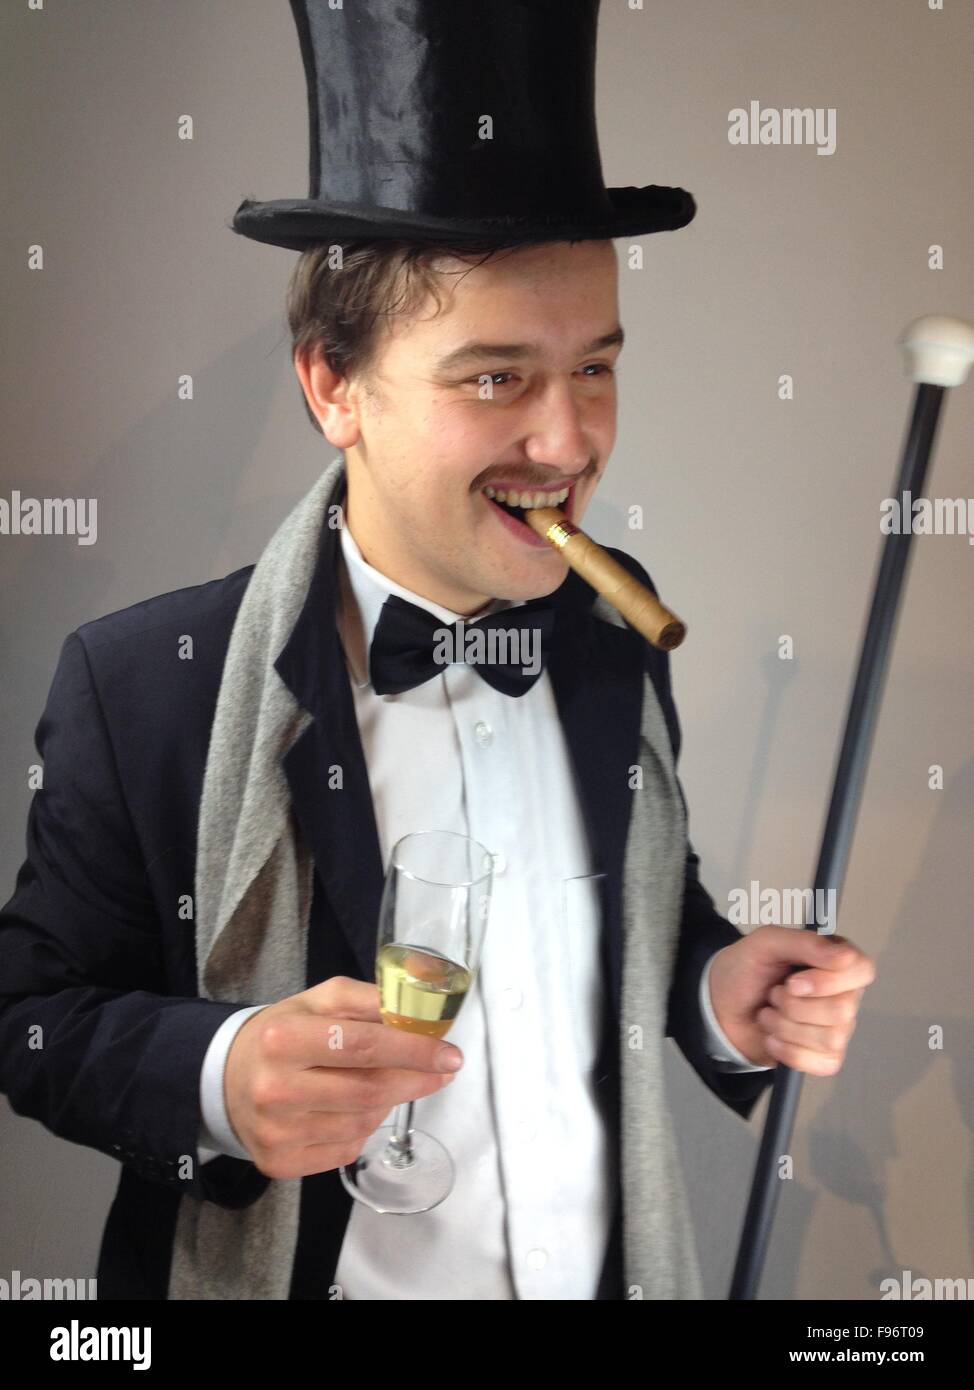 Homme avec chapeau haut de forme et cigare Photo Stock - Alamy